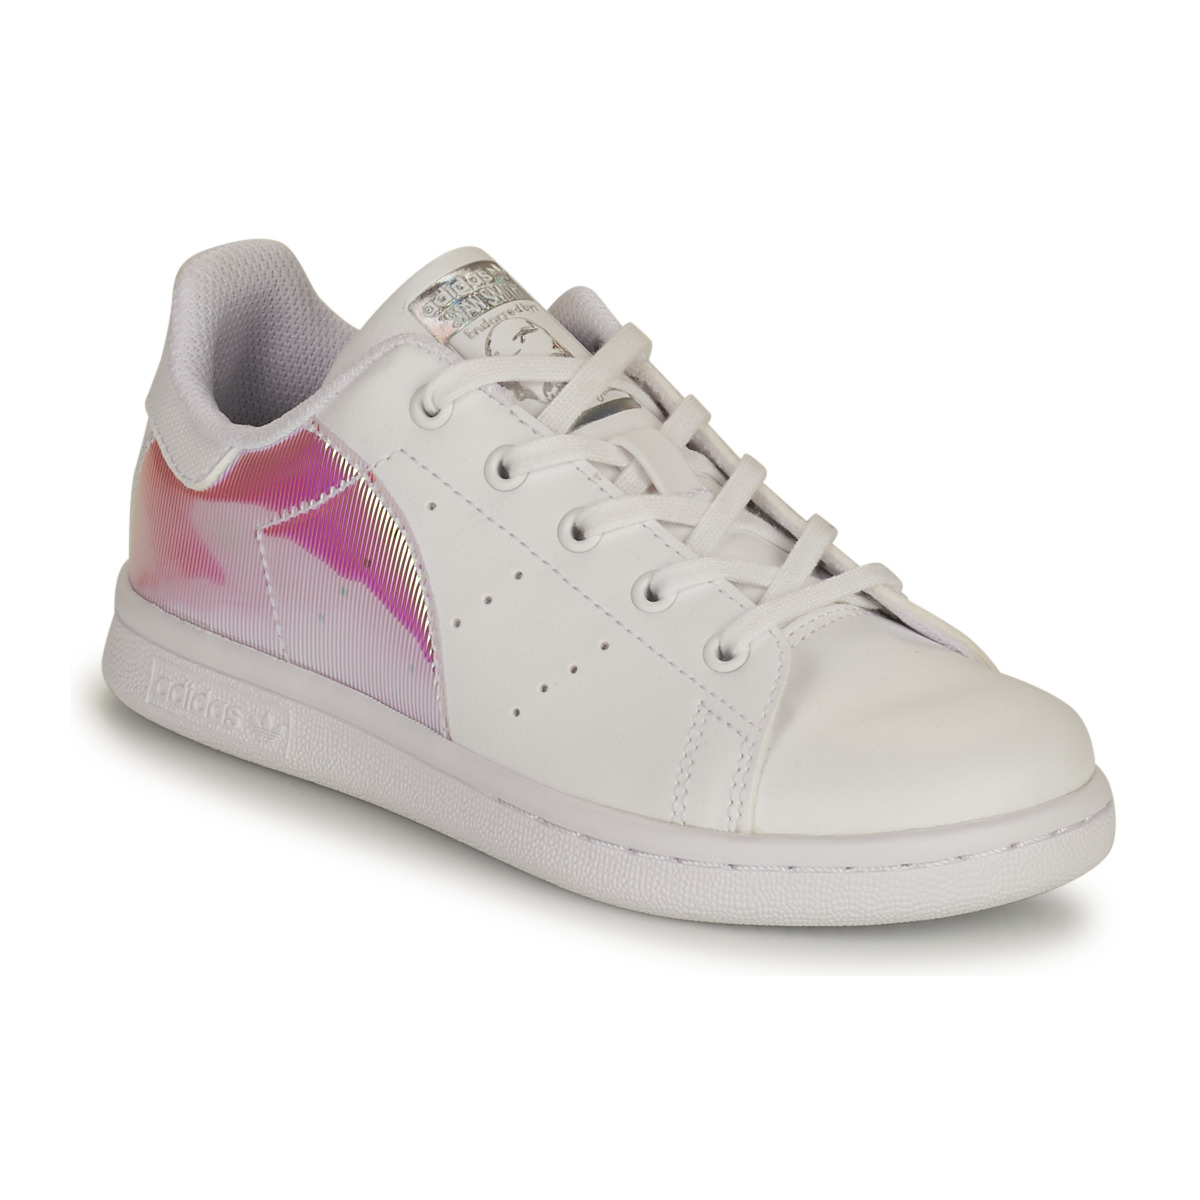 Παπούτσια Κορίτσι Χαμηλά Sneakers adidas Originals STAN SMITH C SUSTAINABLE Άσπρο / Ροζ / Iridescent